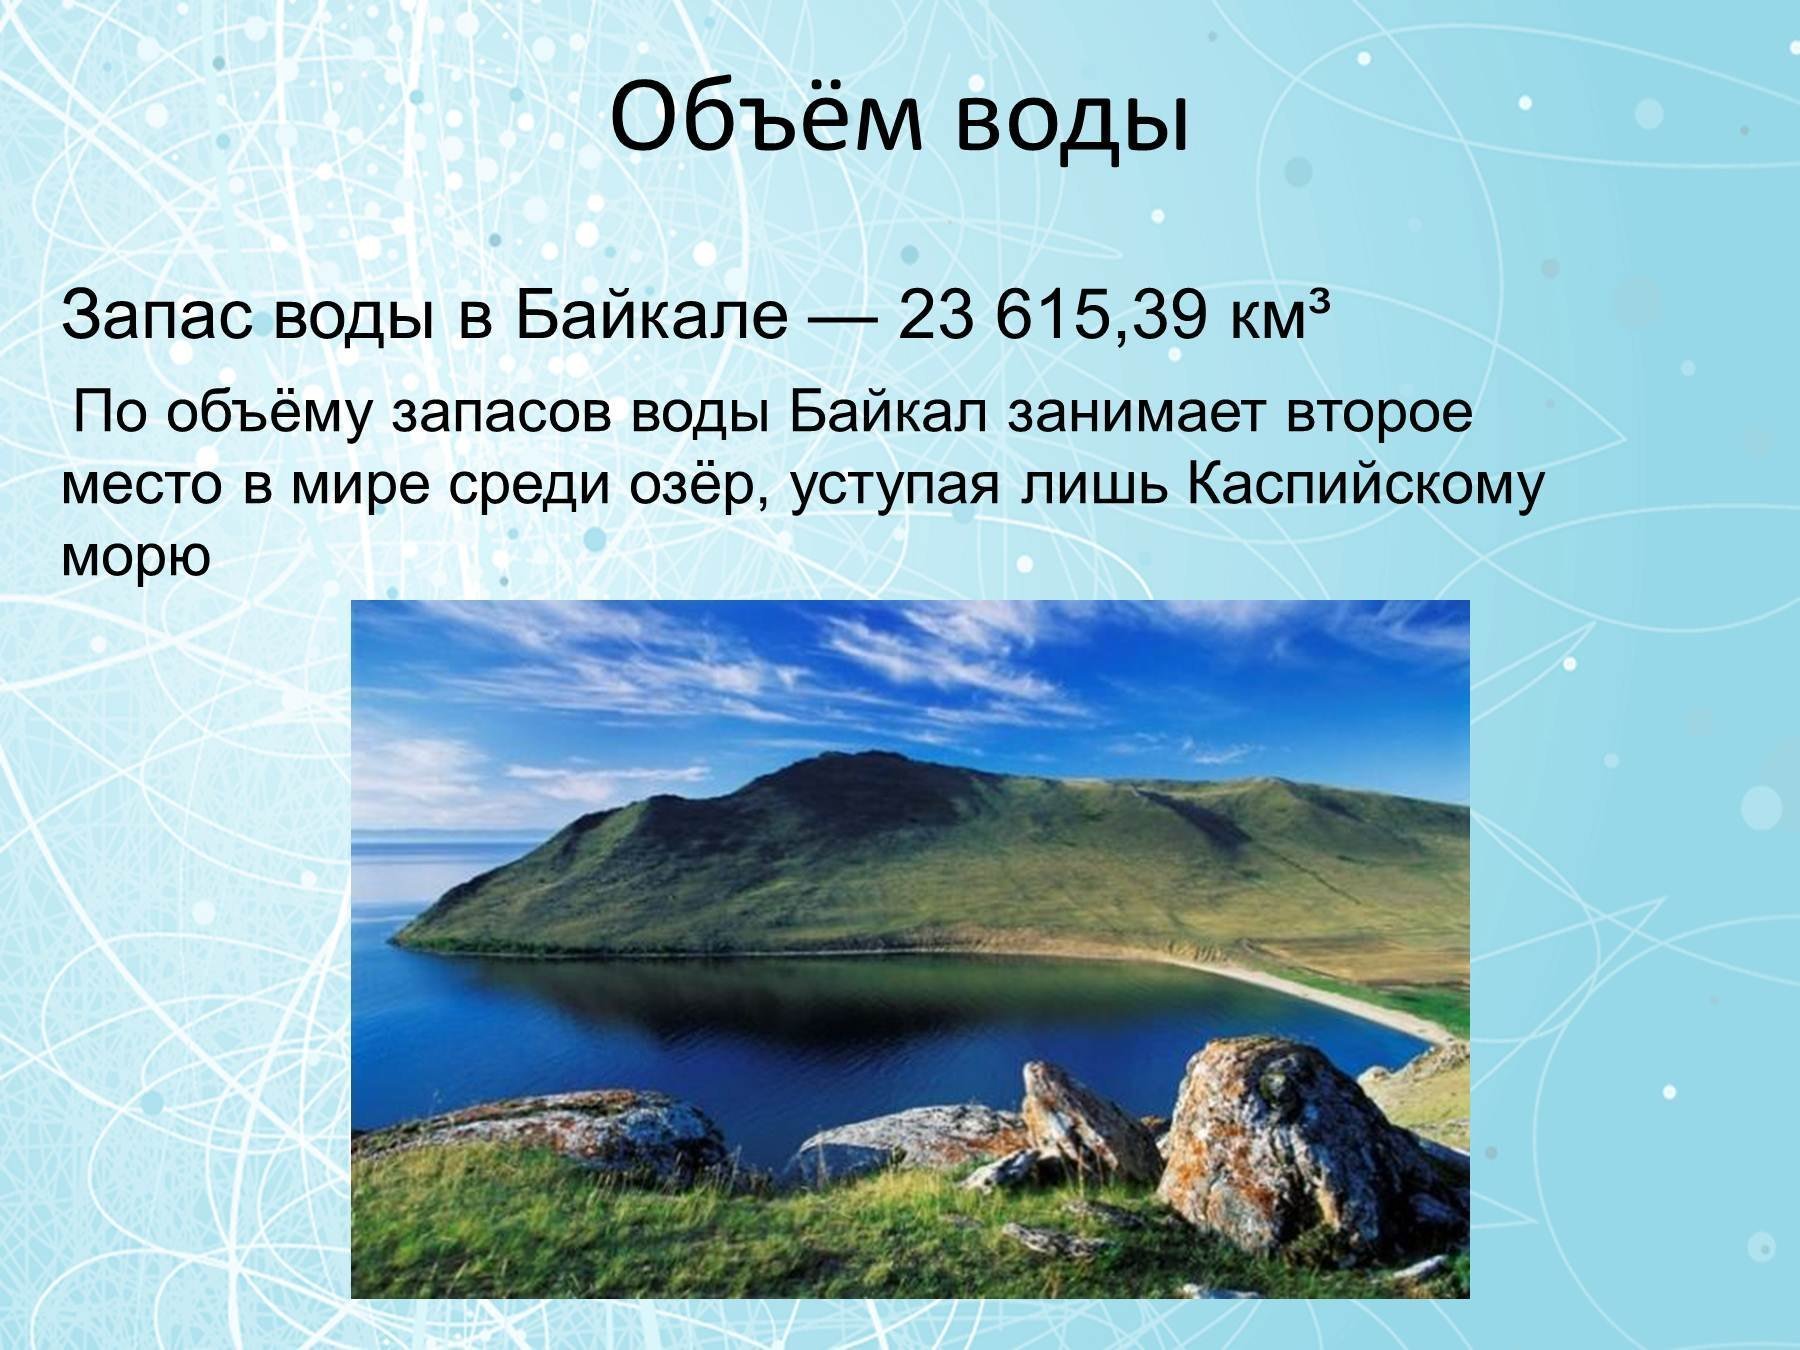 Размеры озера вода. Объем воды в Байкале. Озеро Байкал объем воды. Запасы воды в Байкале. Объем озера Байкал.